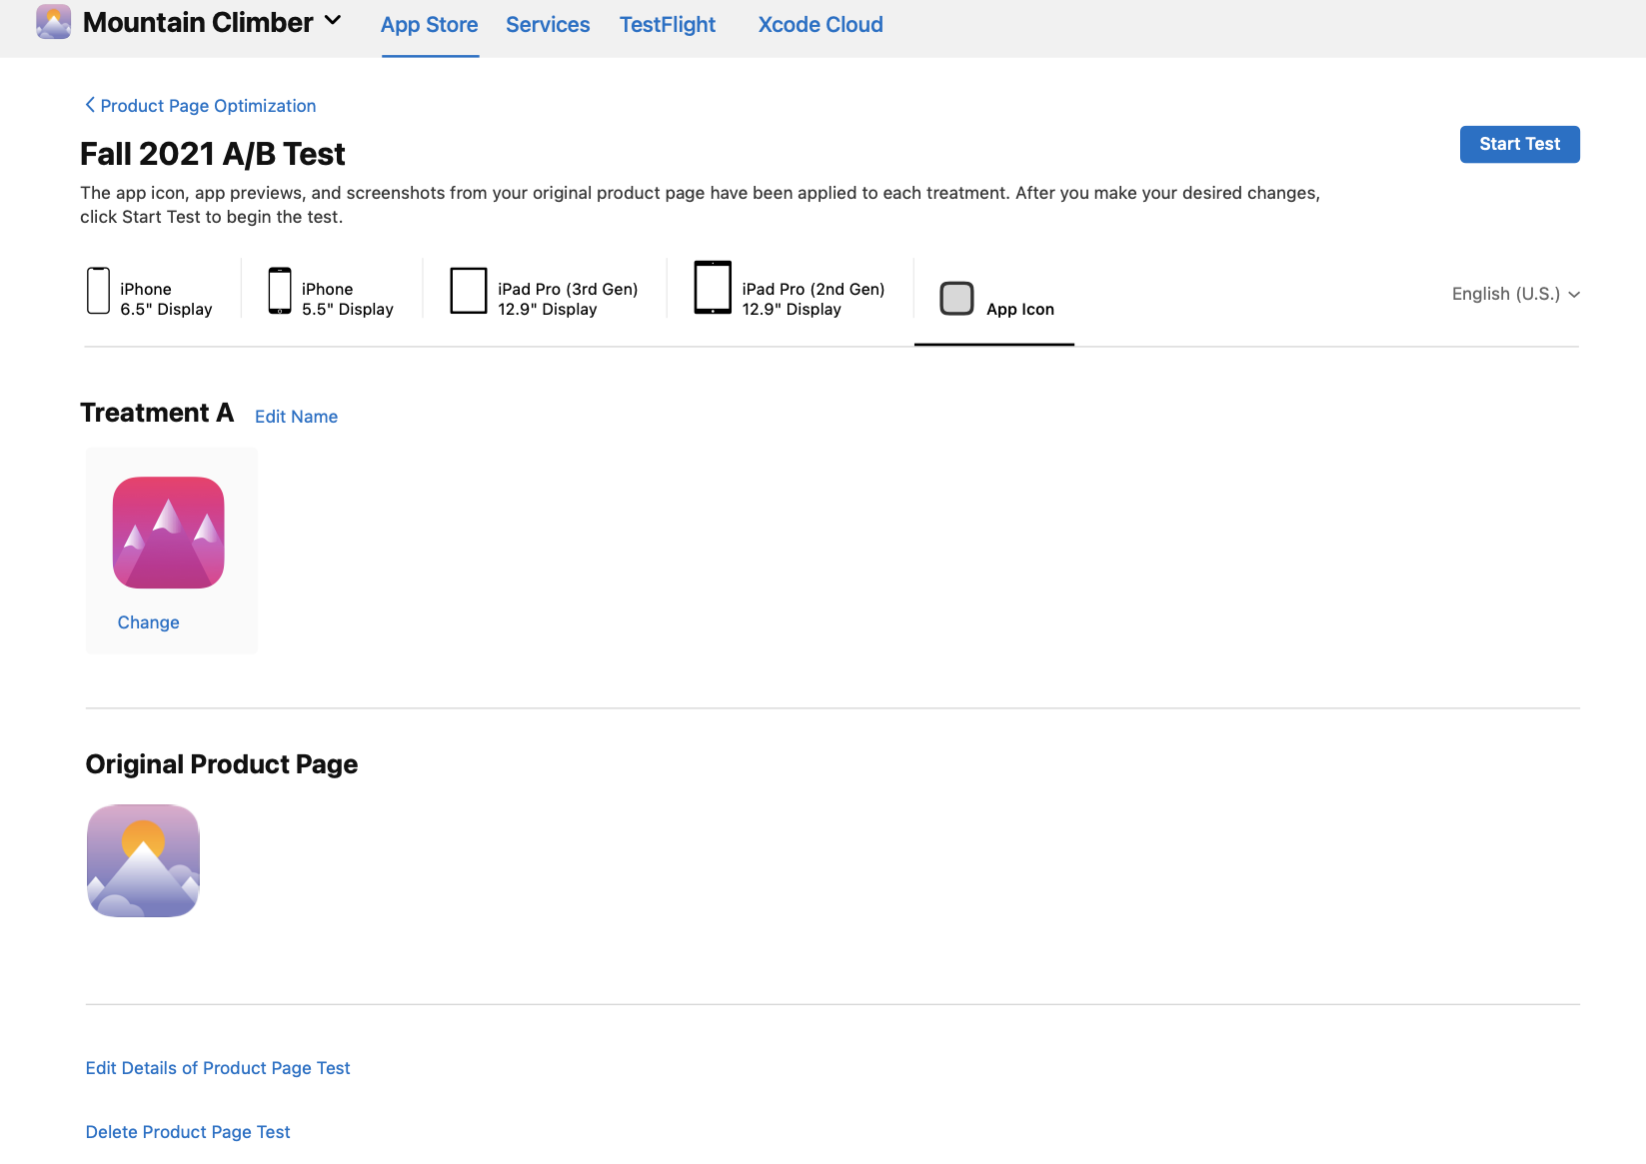 App Store Connect는 제품 페이지의 원래 제품 페이지 아이콘과 테스트 처리 아이콘을 표시합니다.